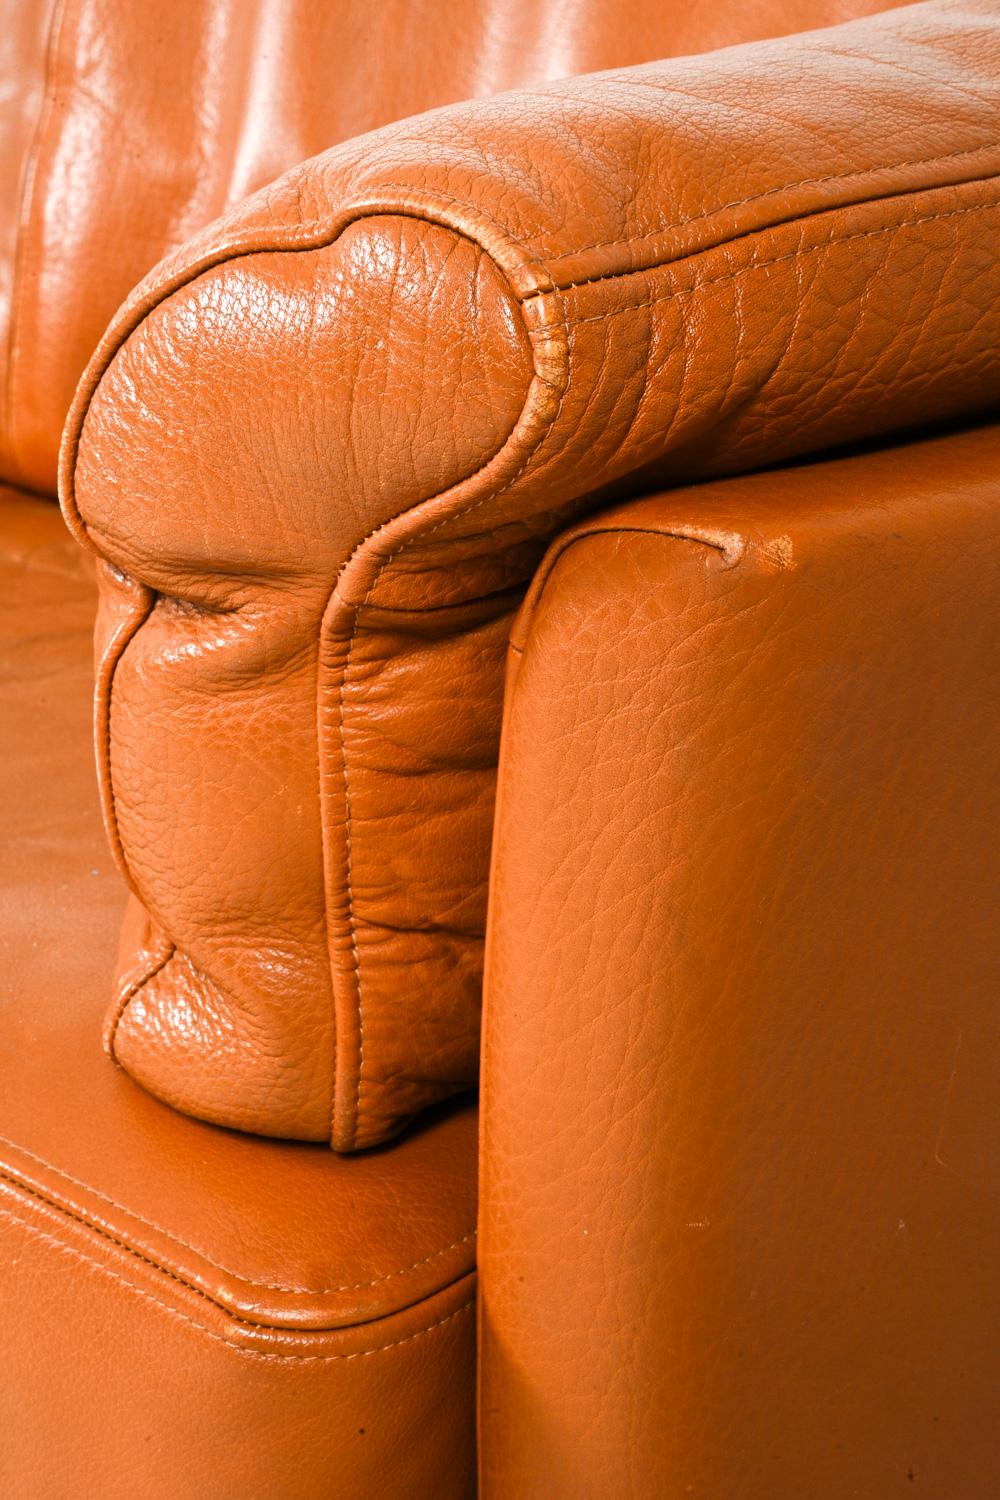 Mogens Hansen Danish Modern Two-Seat Sofa in Leather & Oak For Sale 2